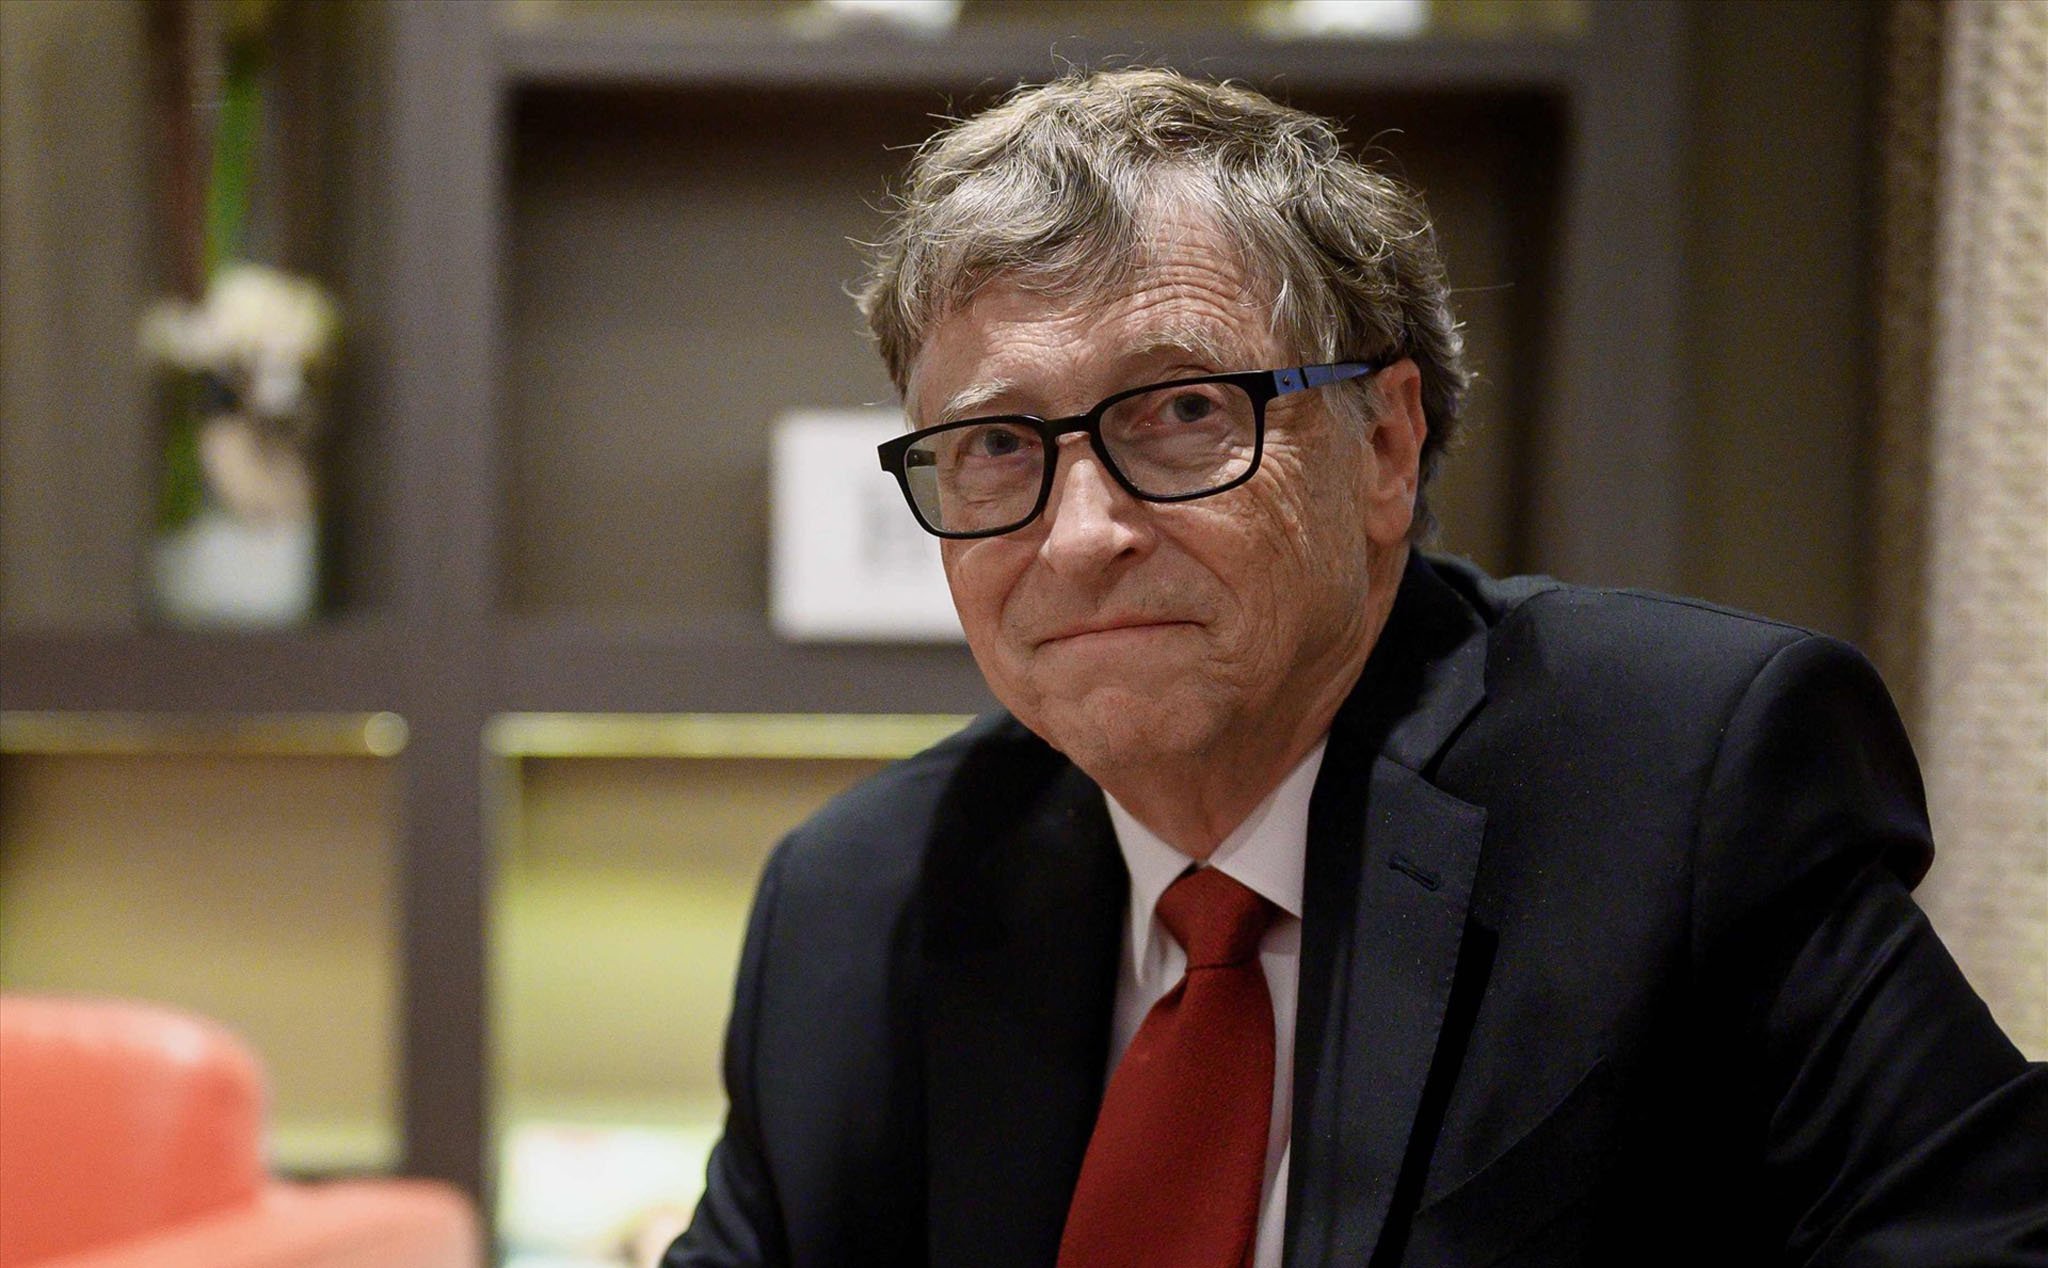 Đang giải quyết thủ tục ly hôn, Bill Gates gặp cáo buộc ngoại tình với một kỹ sư Microsoft